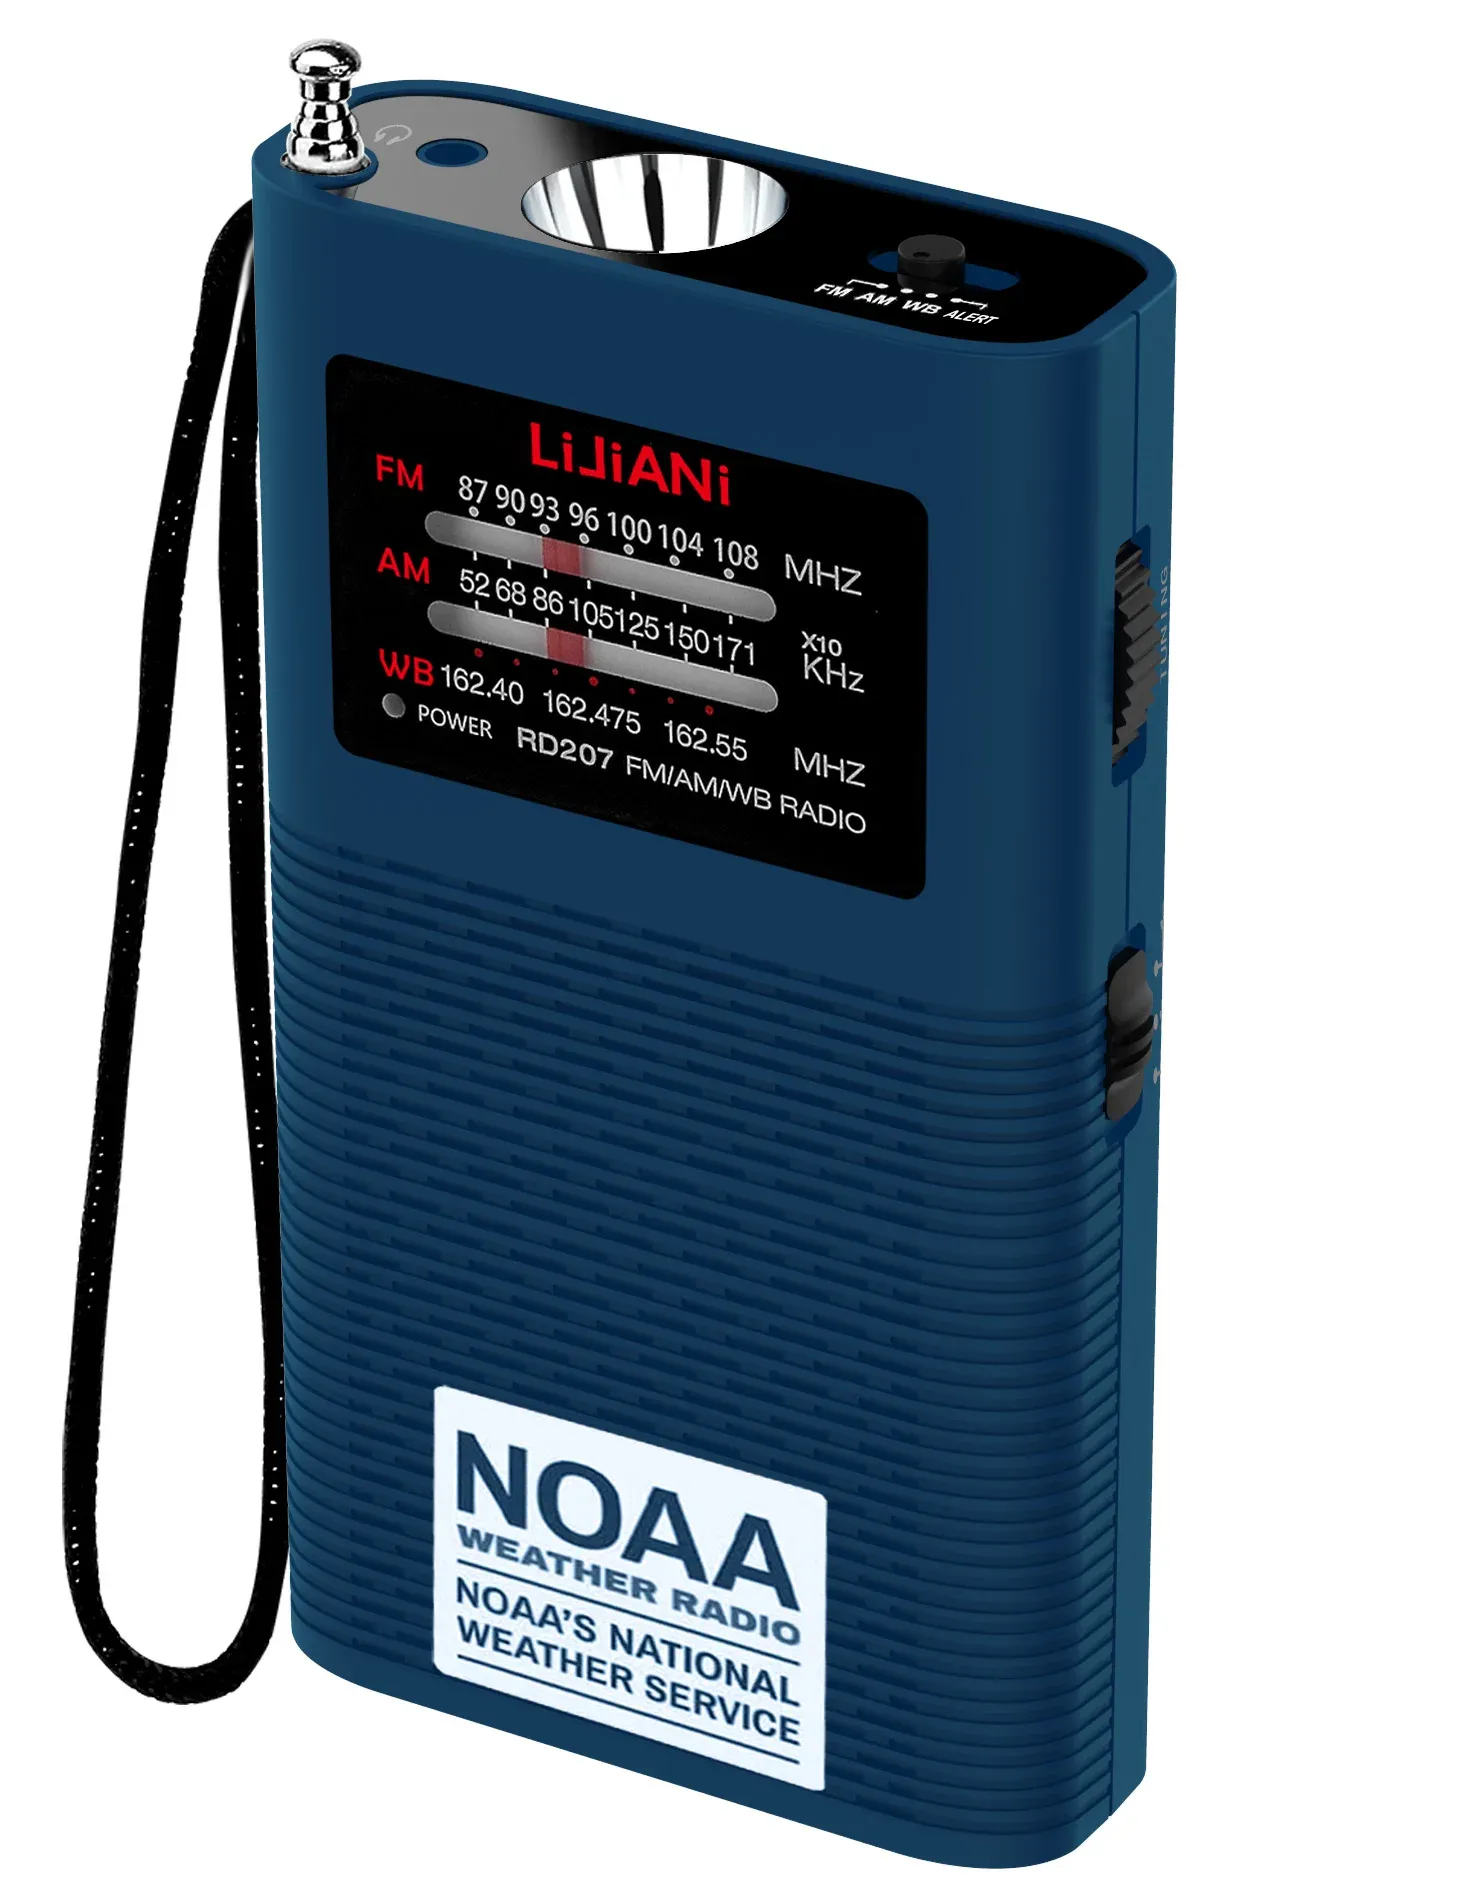 Radio NOAA Weather Radio Portable AM FMトランジスタバッテリー1500MAH（含まれています）が強いFlashlingHTUSのみバージョンで動作します。